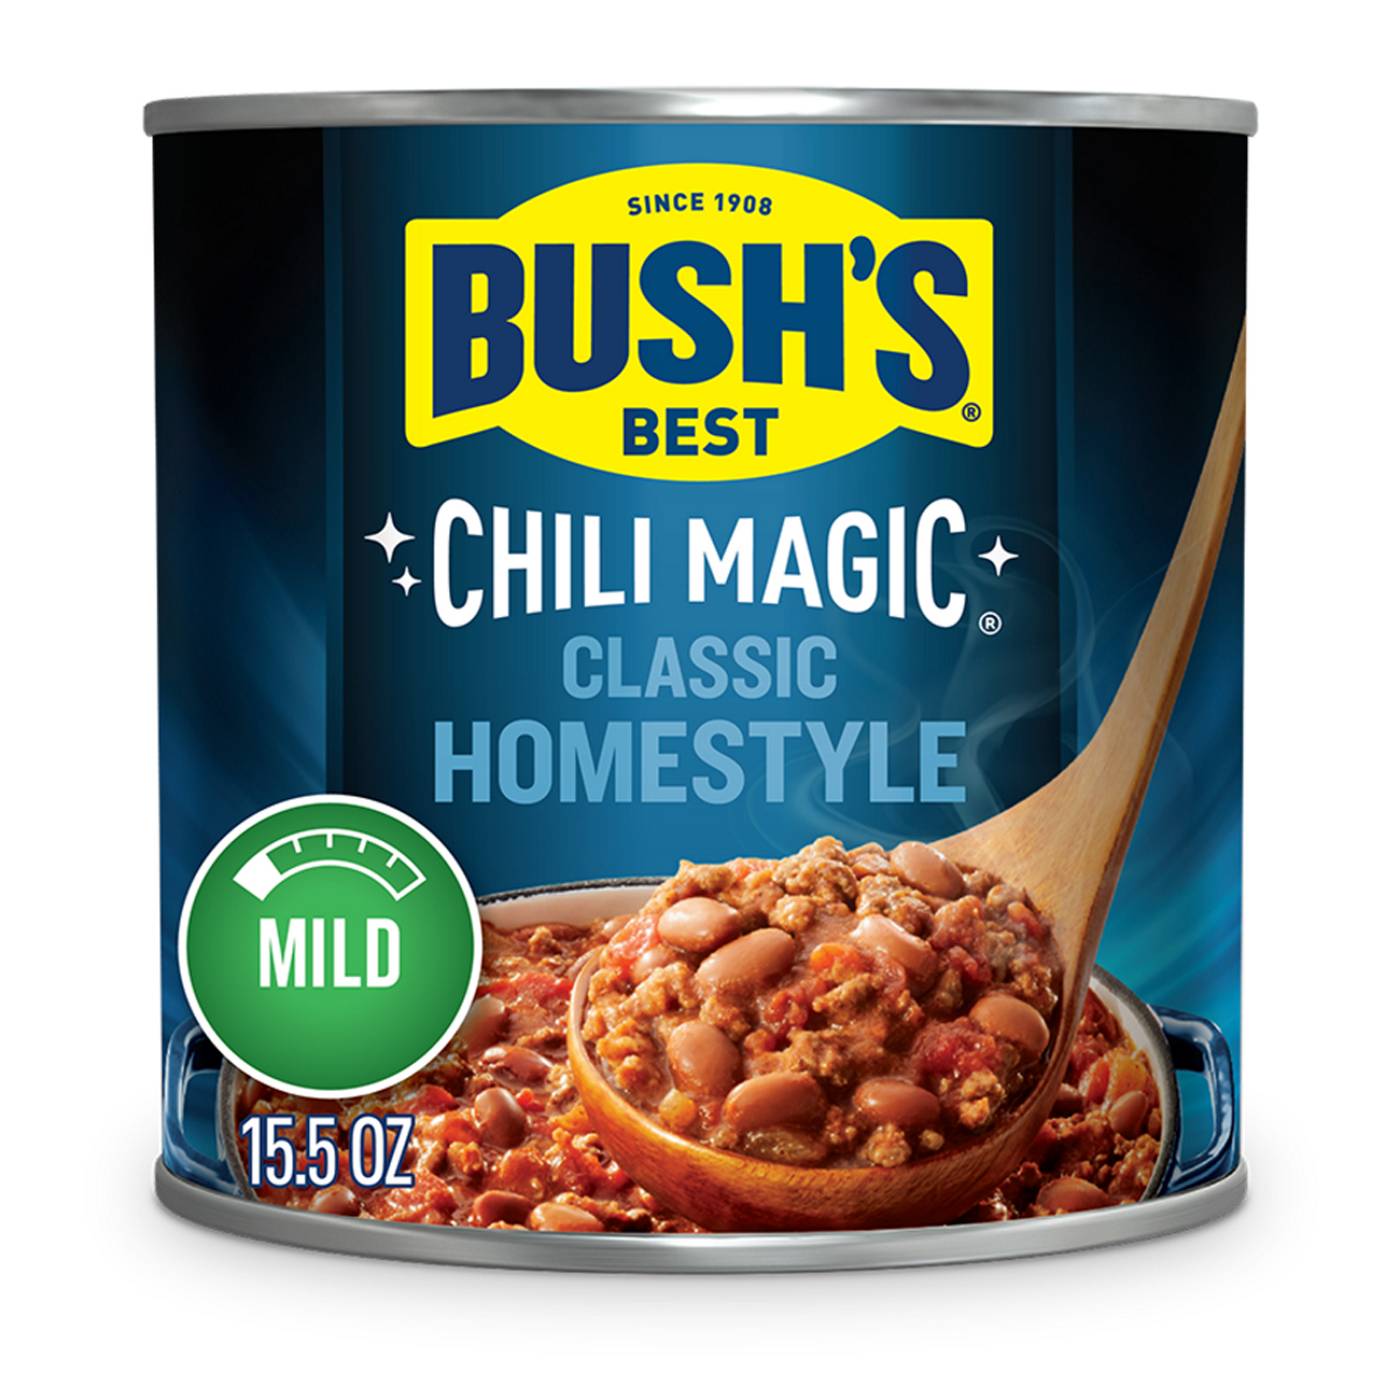 Bush's Chili Magic Classic Homestyle Chili Starter Mild 15.5oz 